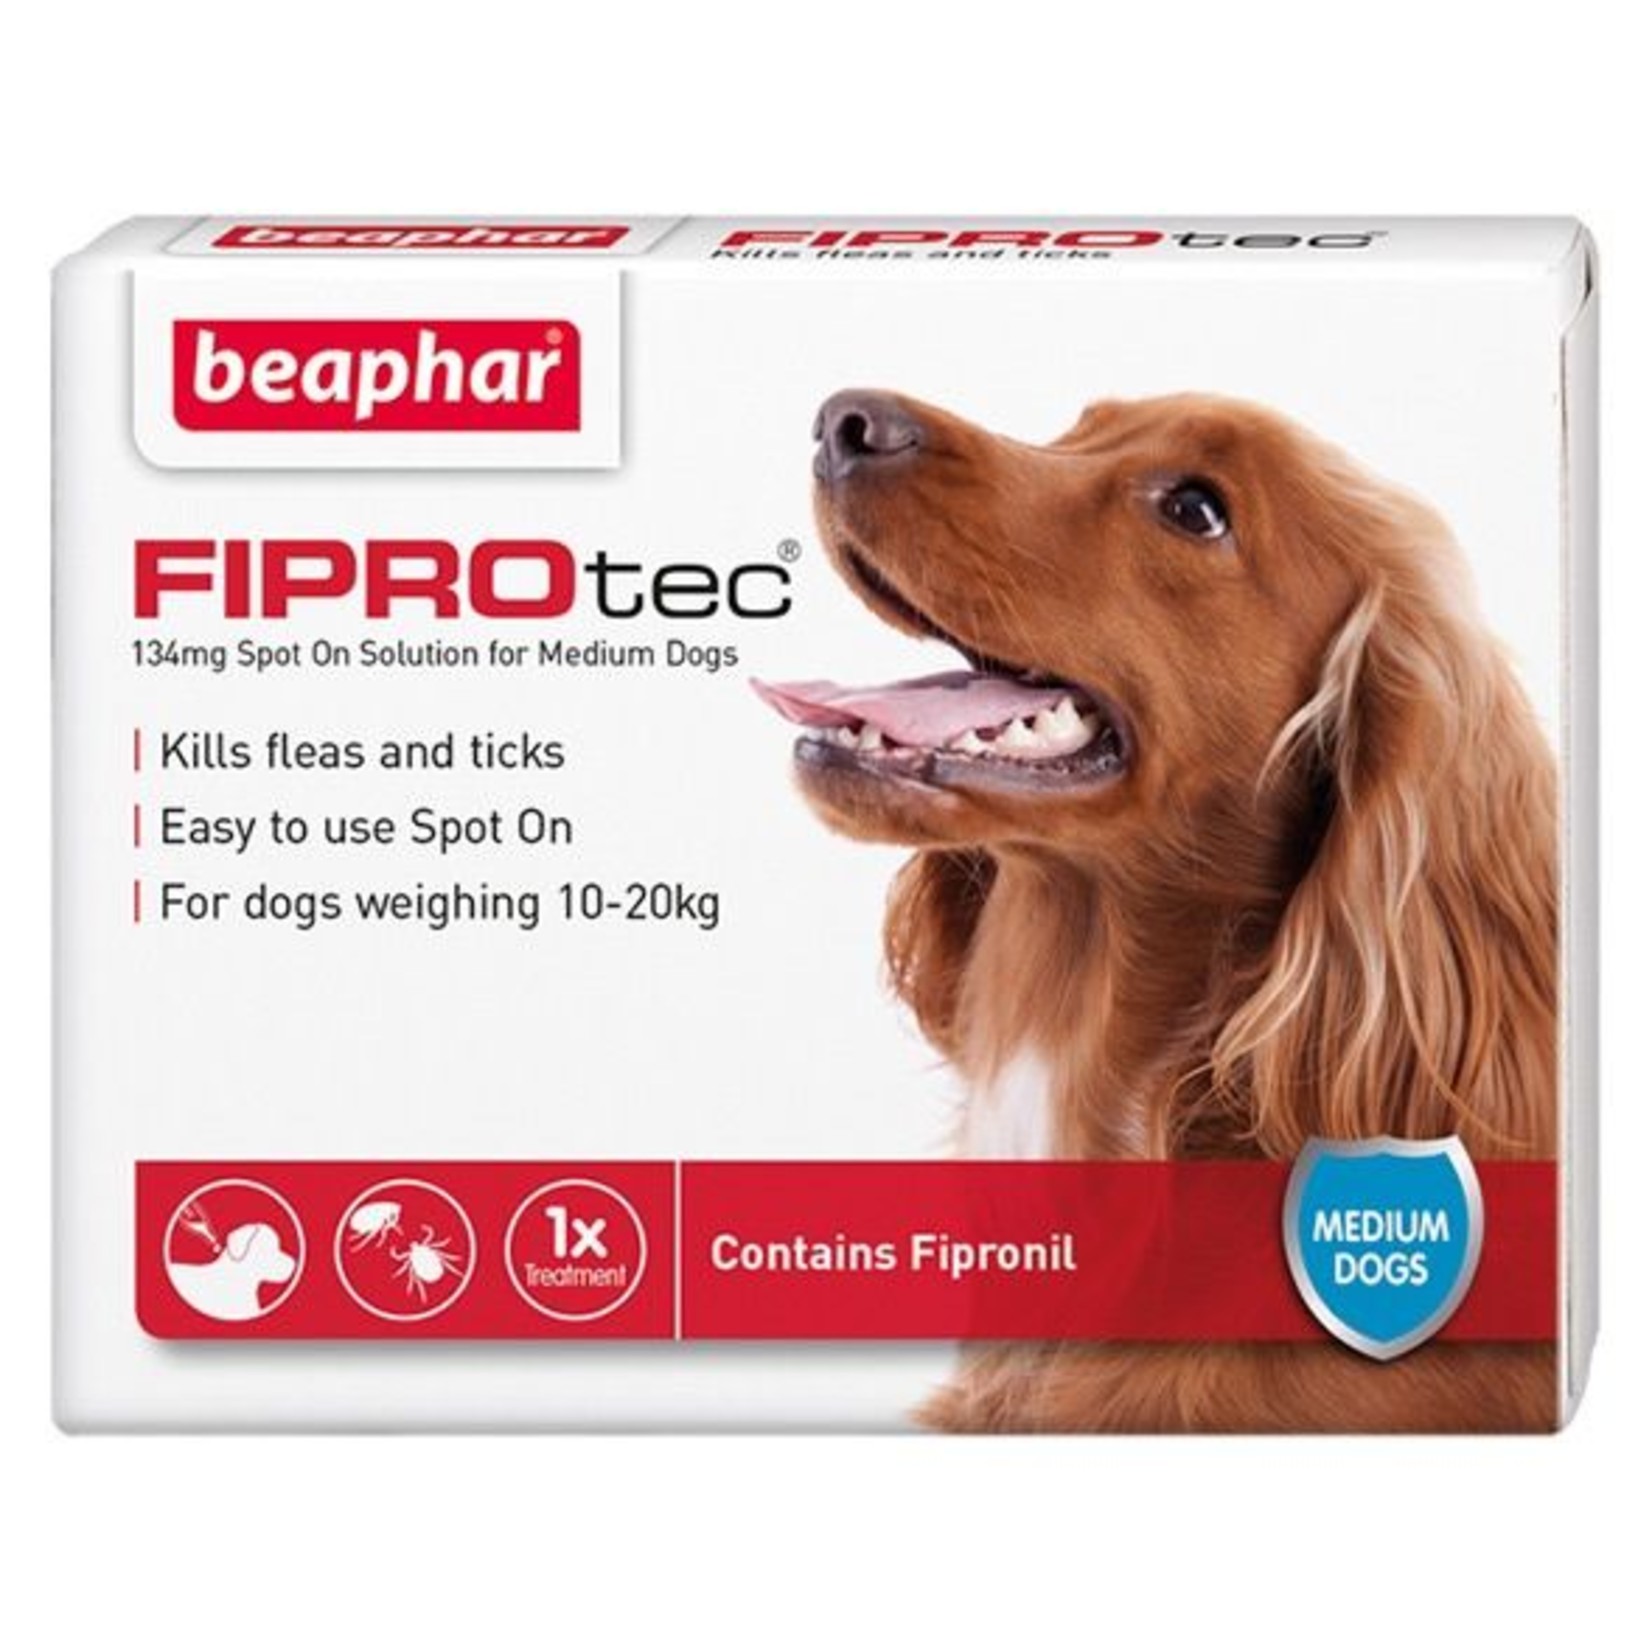 Beaphar FIPROtec Flea & Tick Spot On Solution for Medium Dogs